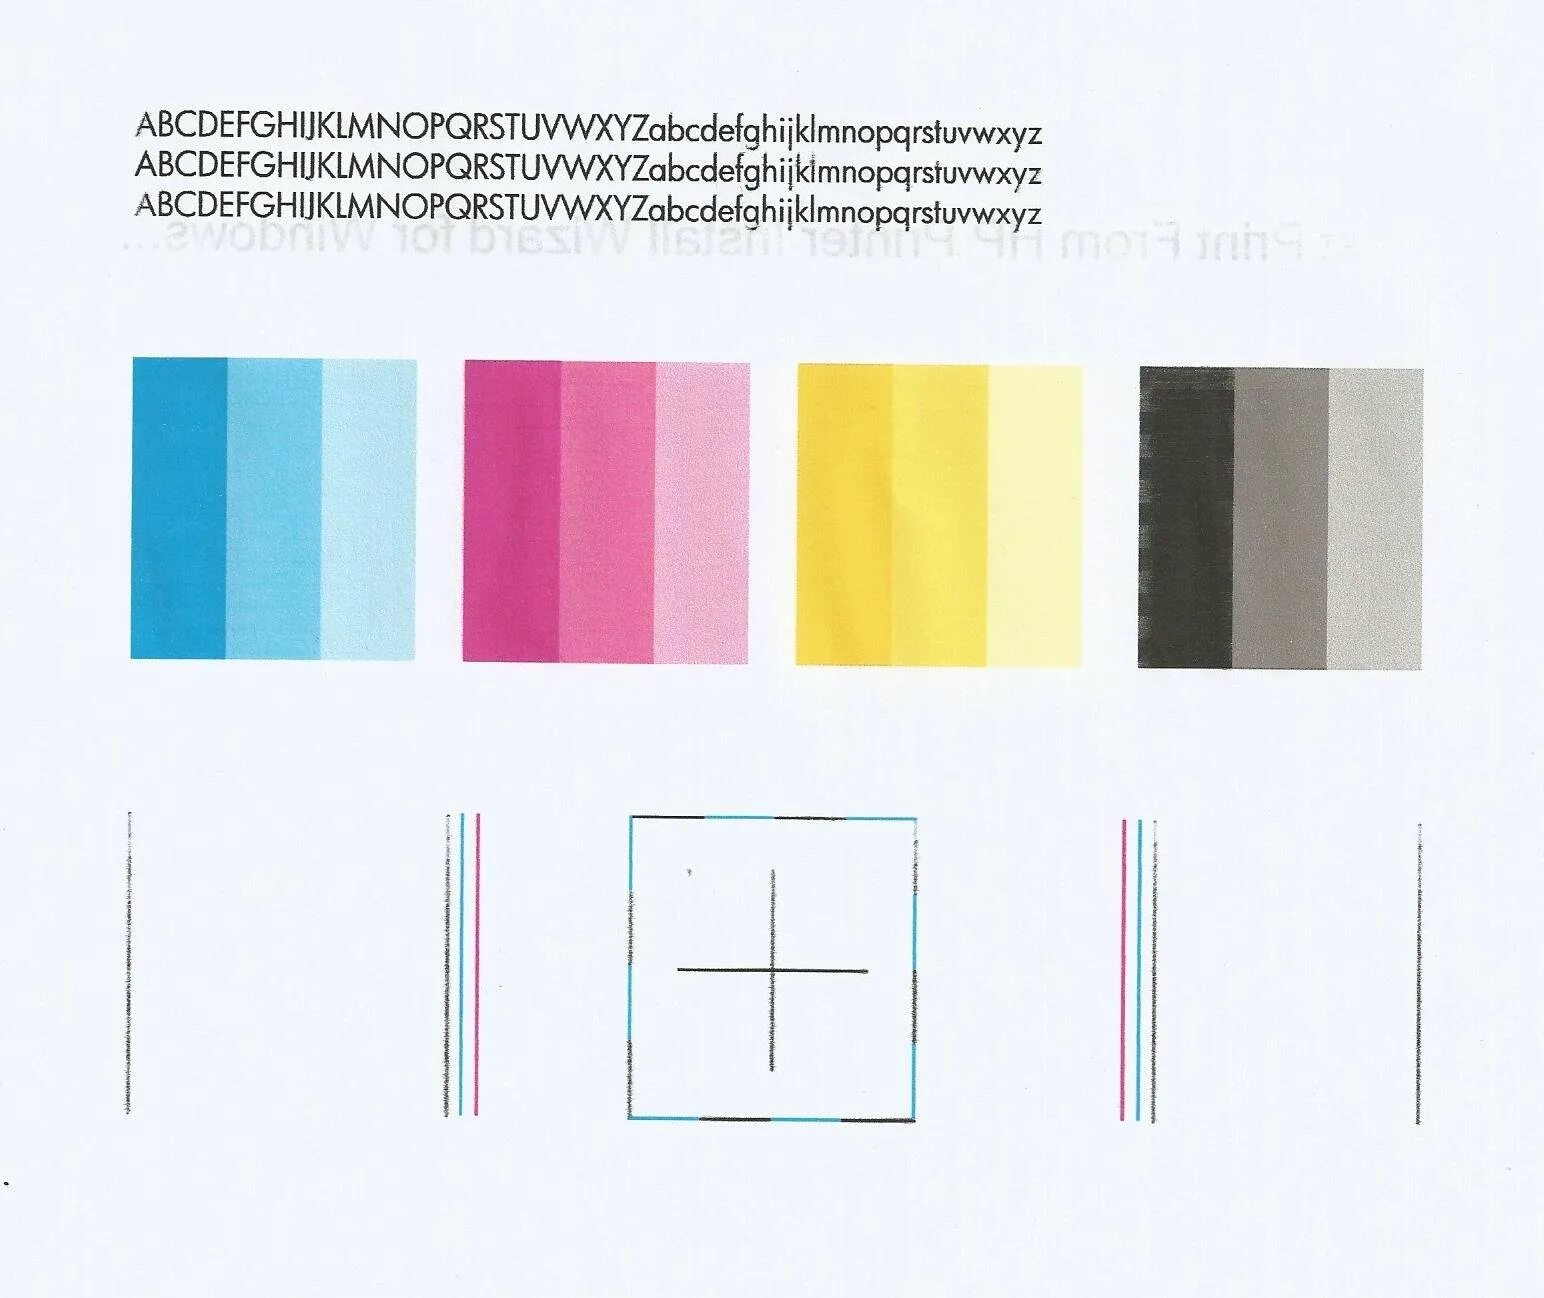 Пример печати принтера. Тест принтера 4 цвета Epson. Тест печати струйного принтера Epson 4 цвета.